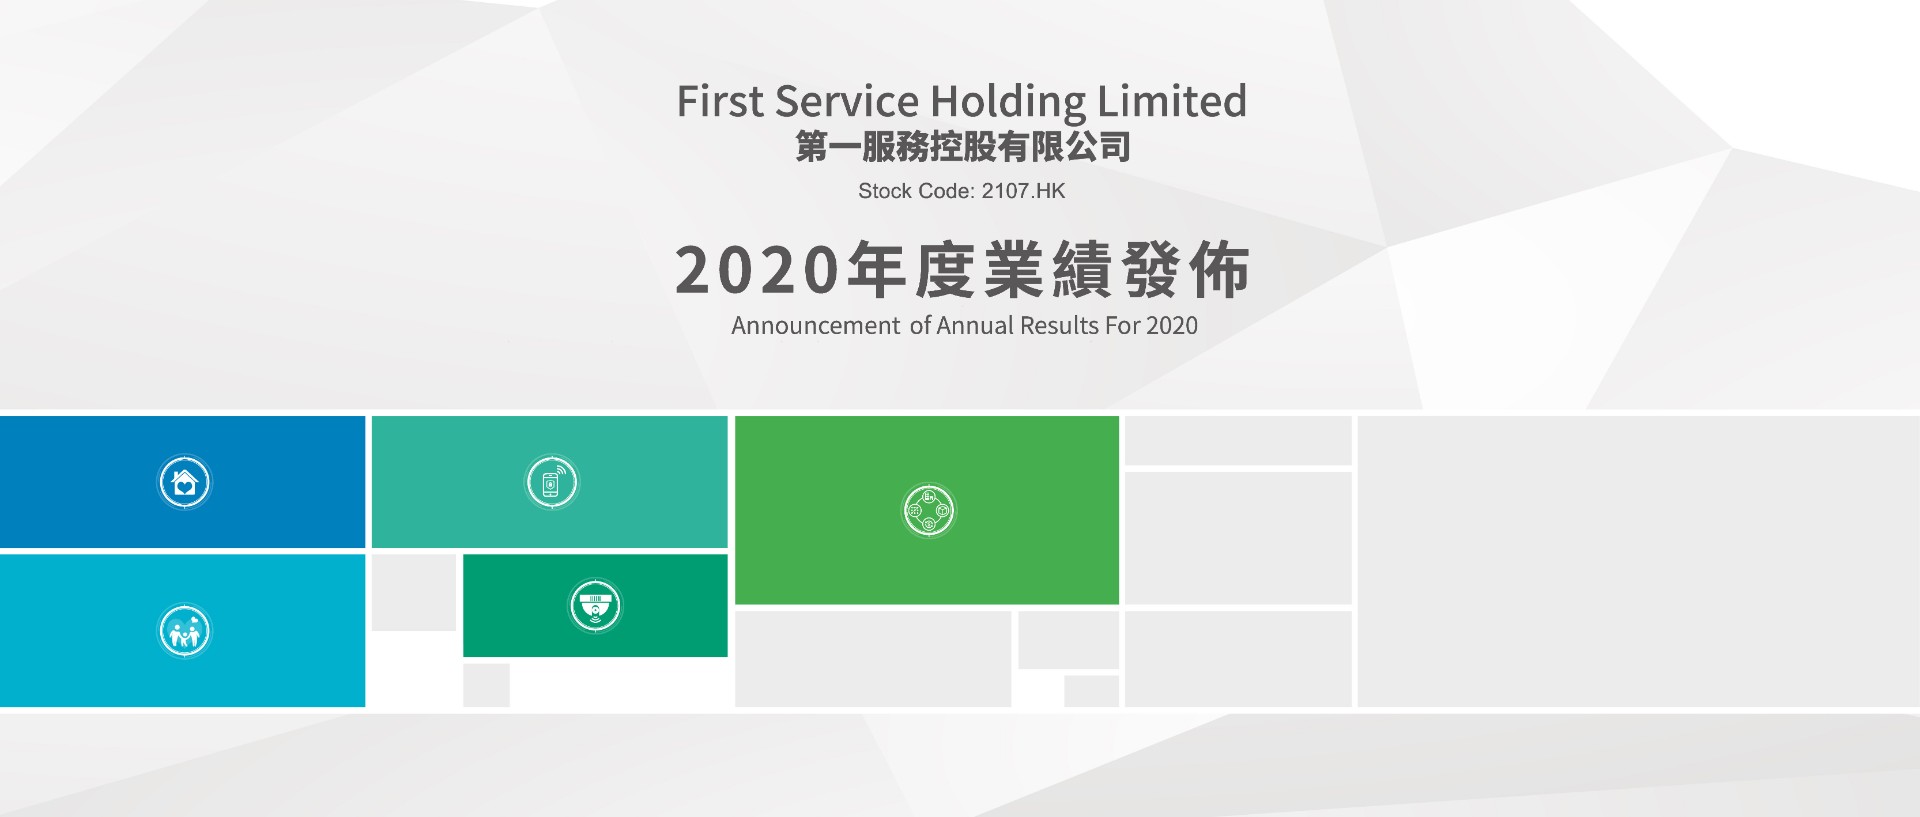 拓展速增、科技赋能、增长可期 第一服务控股(2107.HK) 2020年业绩发布